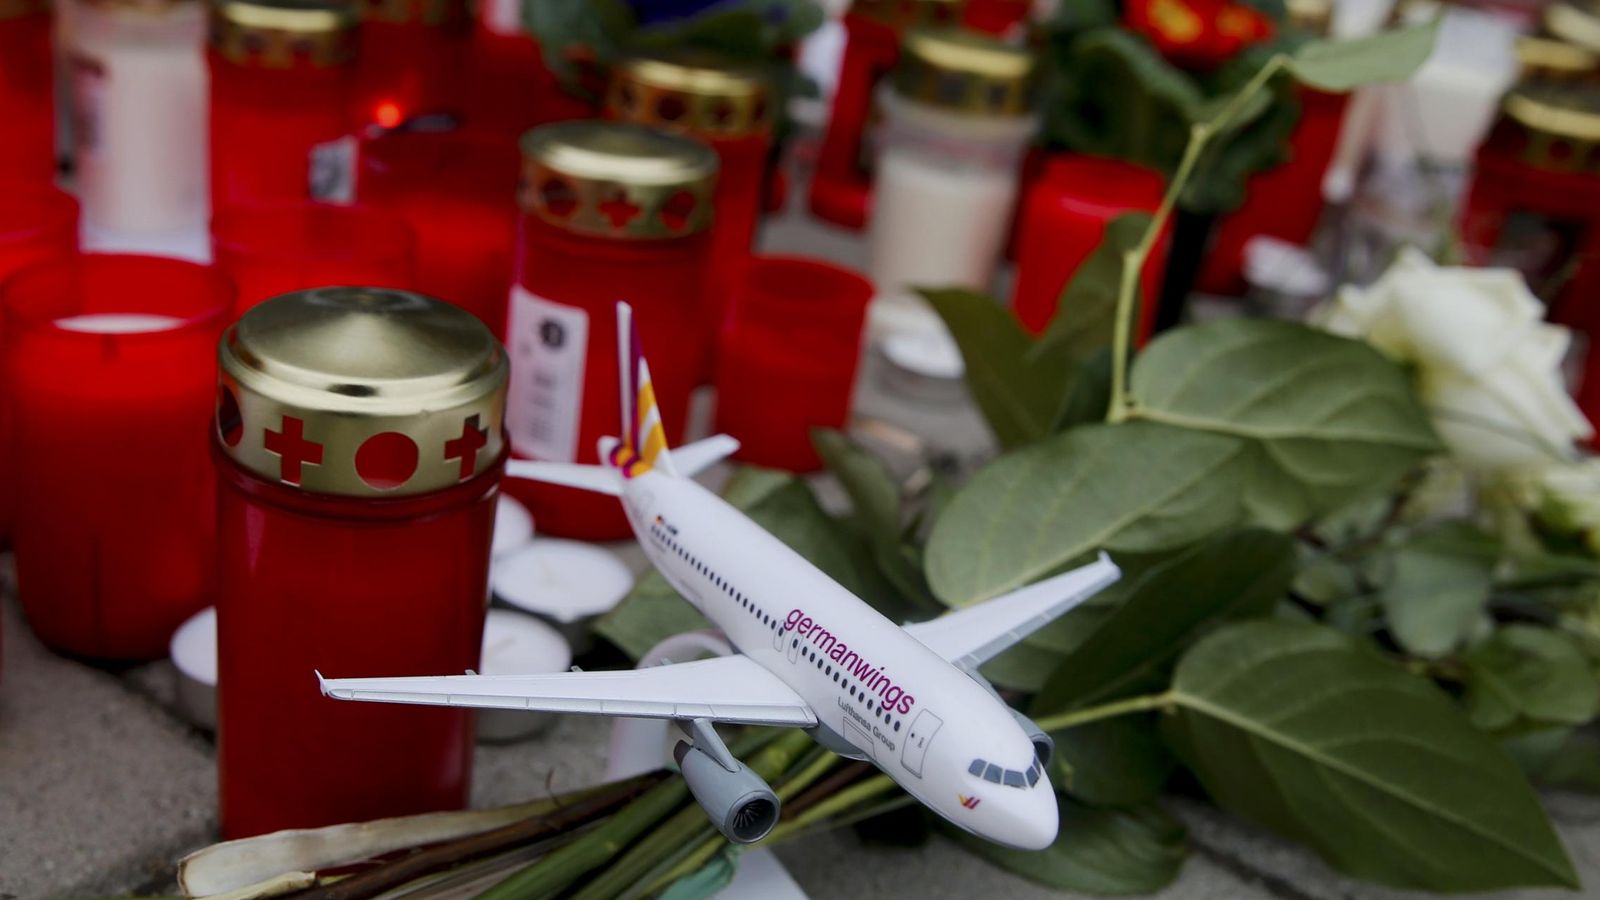 Foto: Velas y un avión de juguete en recuerdo de los fallecidos, en el aeropuerto de Colonia/Bonn. (REUTERS)